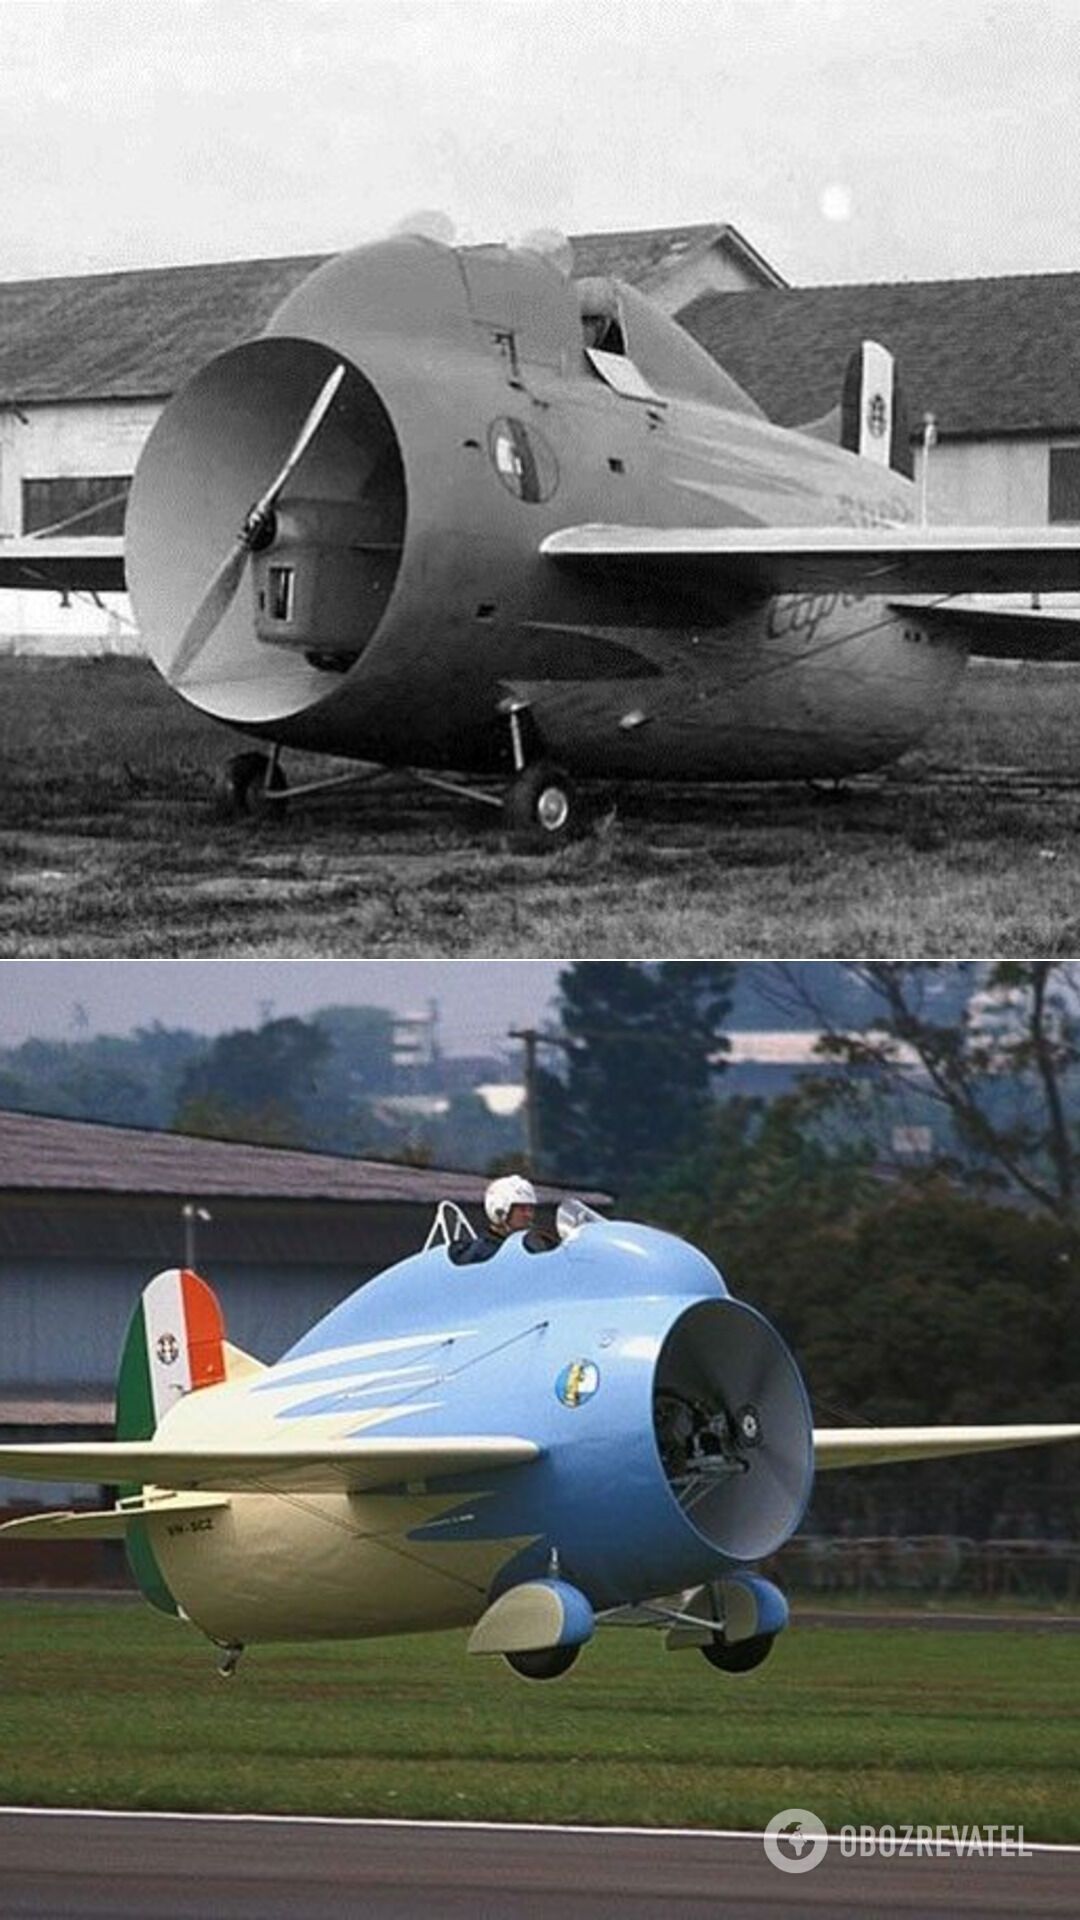 Stipa-Caproni – експериментальний "тунельний" літак італійського виробництва. Перший "Стіпа-Капроні" був обладнаний двигуном DeHavilland Gipsy III потужністю 120 к. с., його політ відбувся 7 жовтня 1932 року. Згодом авторські права на нього було продано до Франції. Однак труднощі воєнного часу, послідували опісля, не дозволили продовжити такий незвичайний експеримент